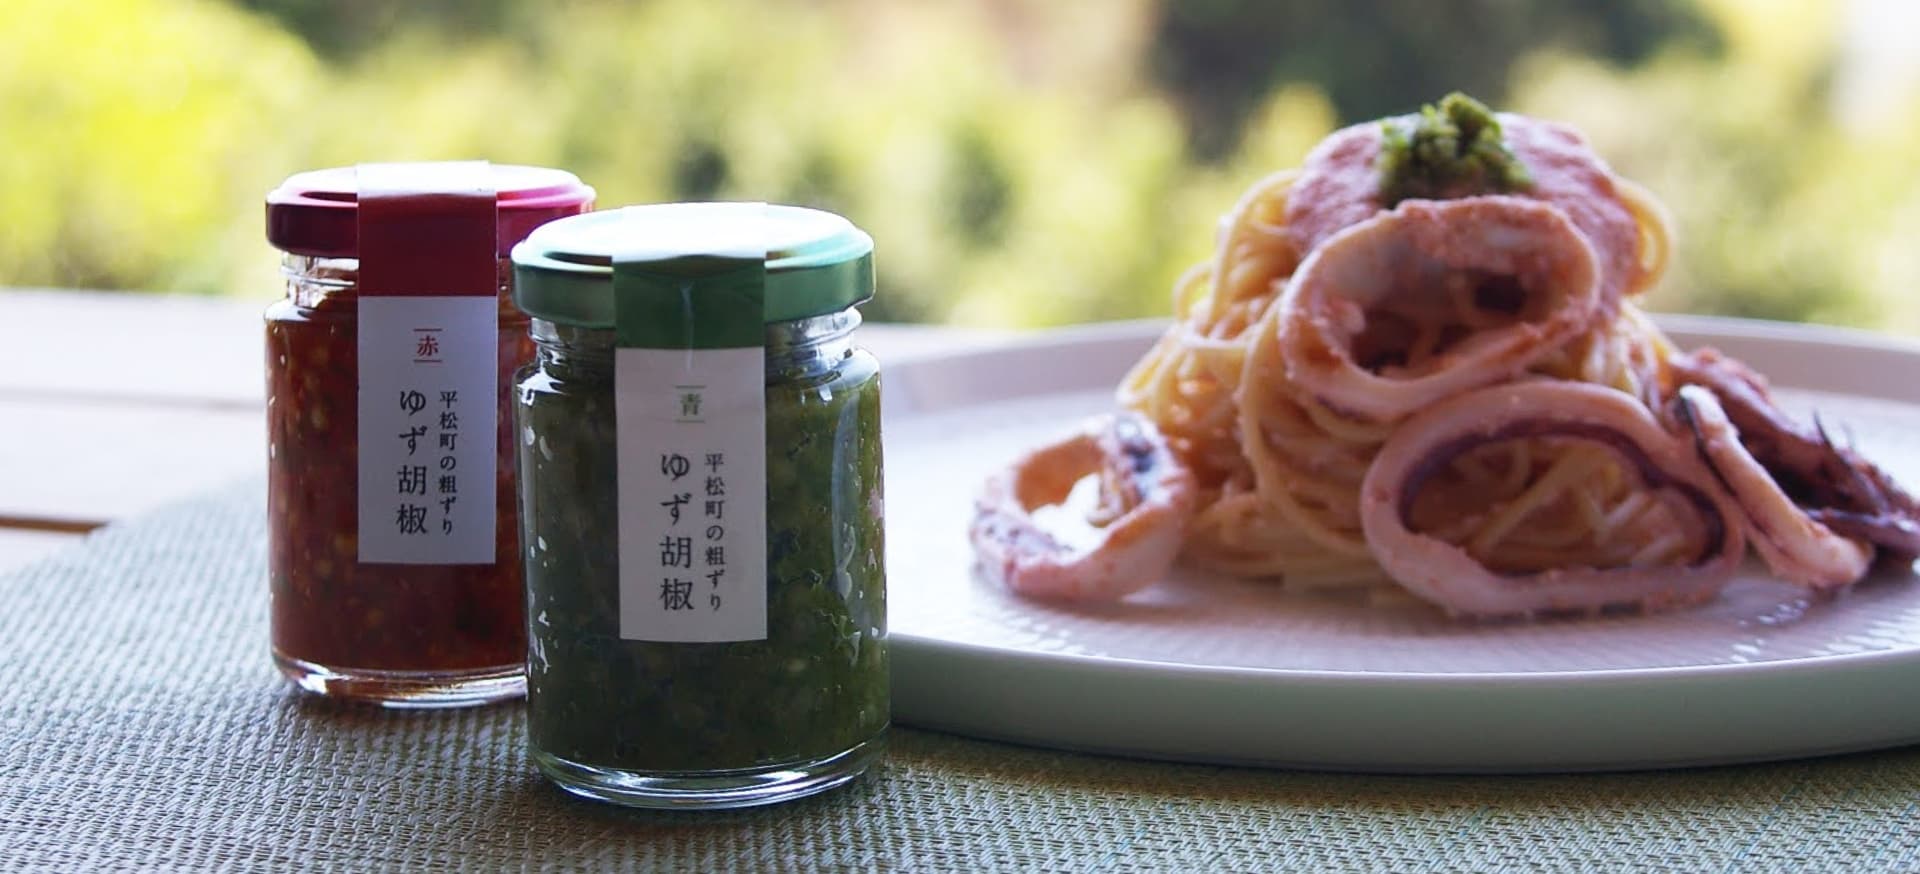 手摘みの新鮮唐辛子と 果汁ほとばしる柚子の香り 長崎の小さな集落平松から 食卓へ郷士の美味しさ届けます